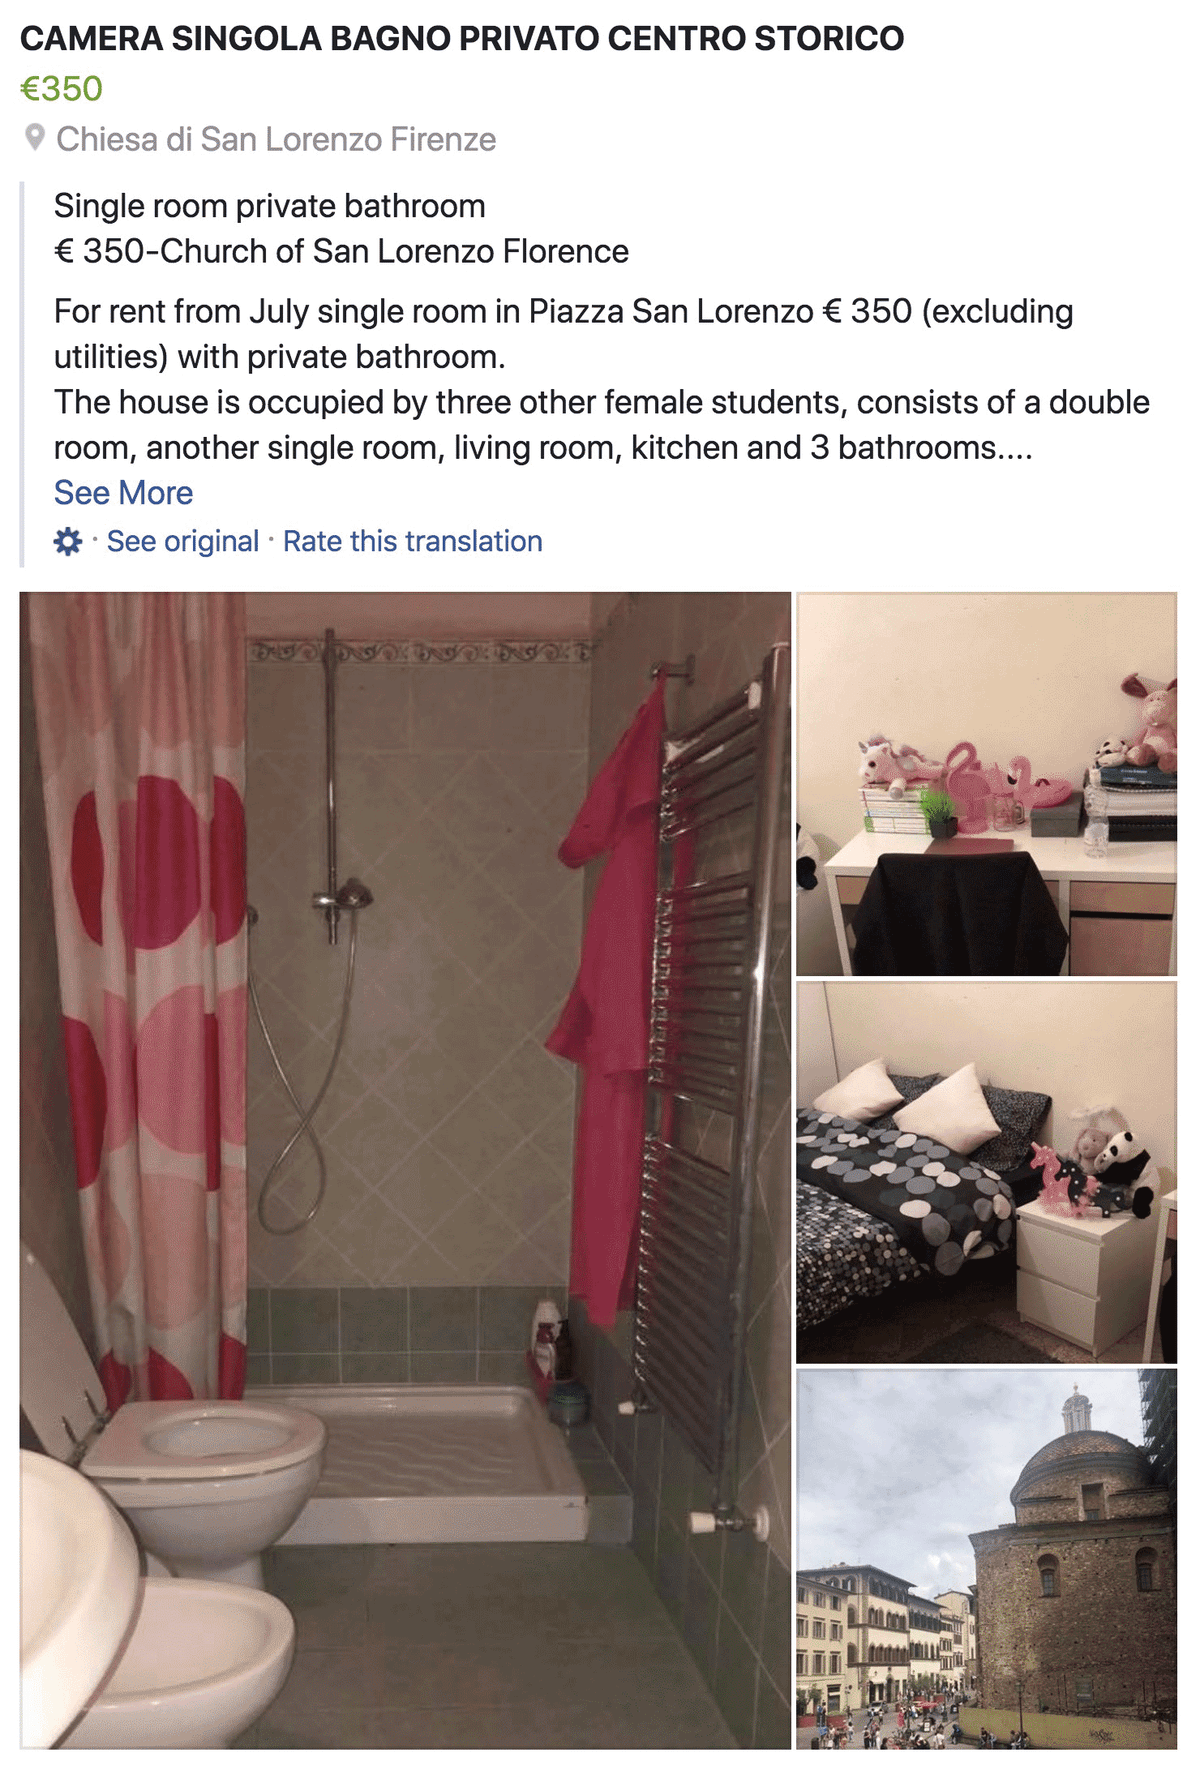 Такую комнату в центре Флоренции можно снять за 350 € в месяц